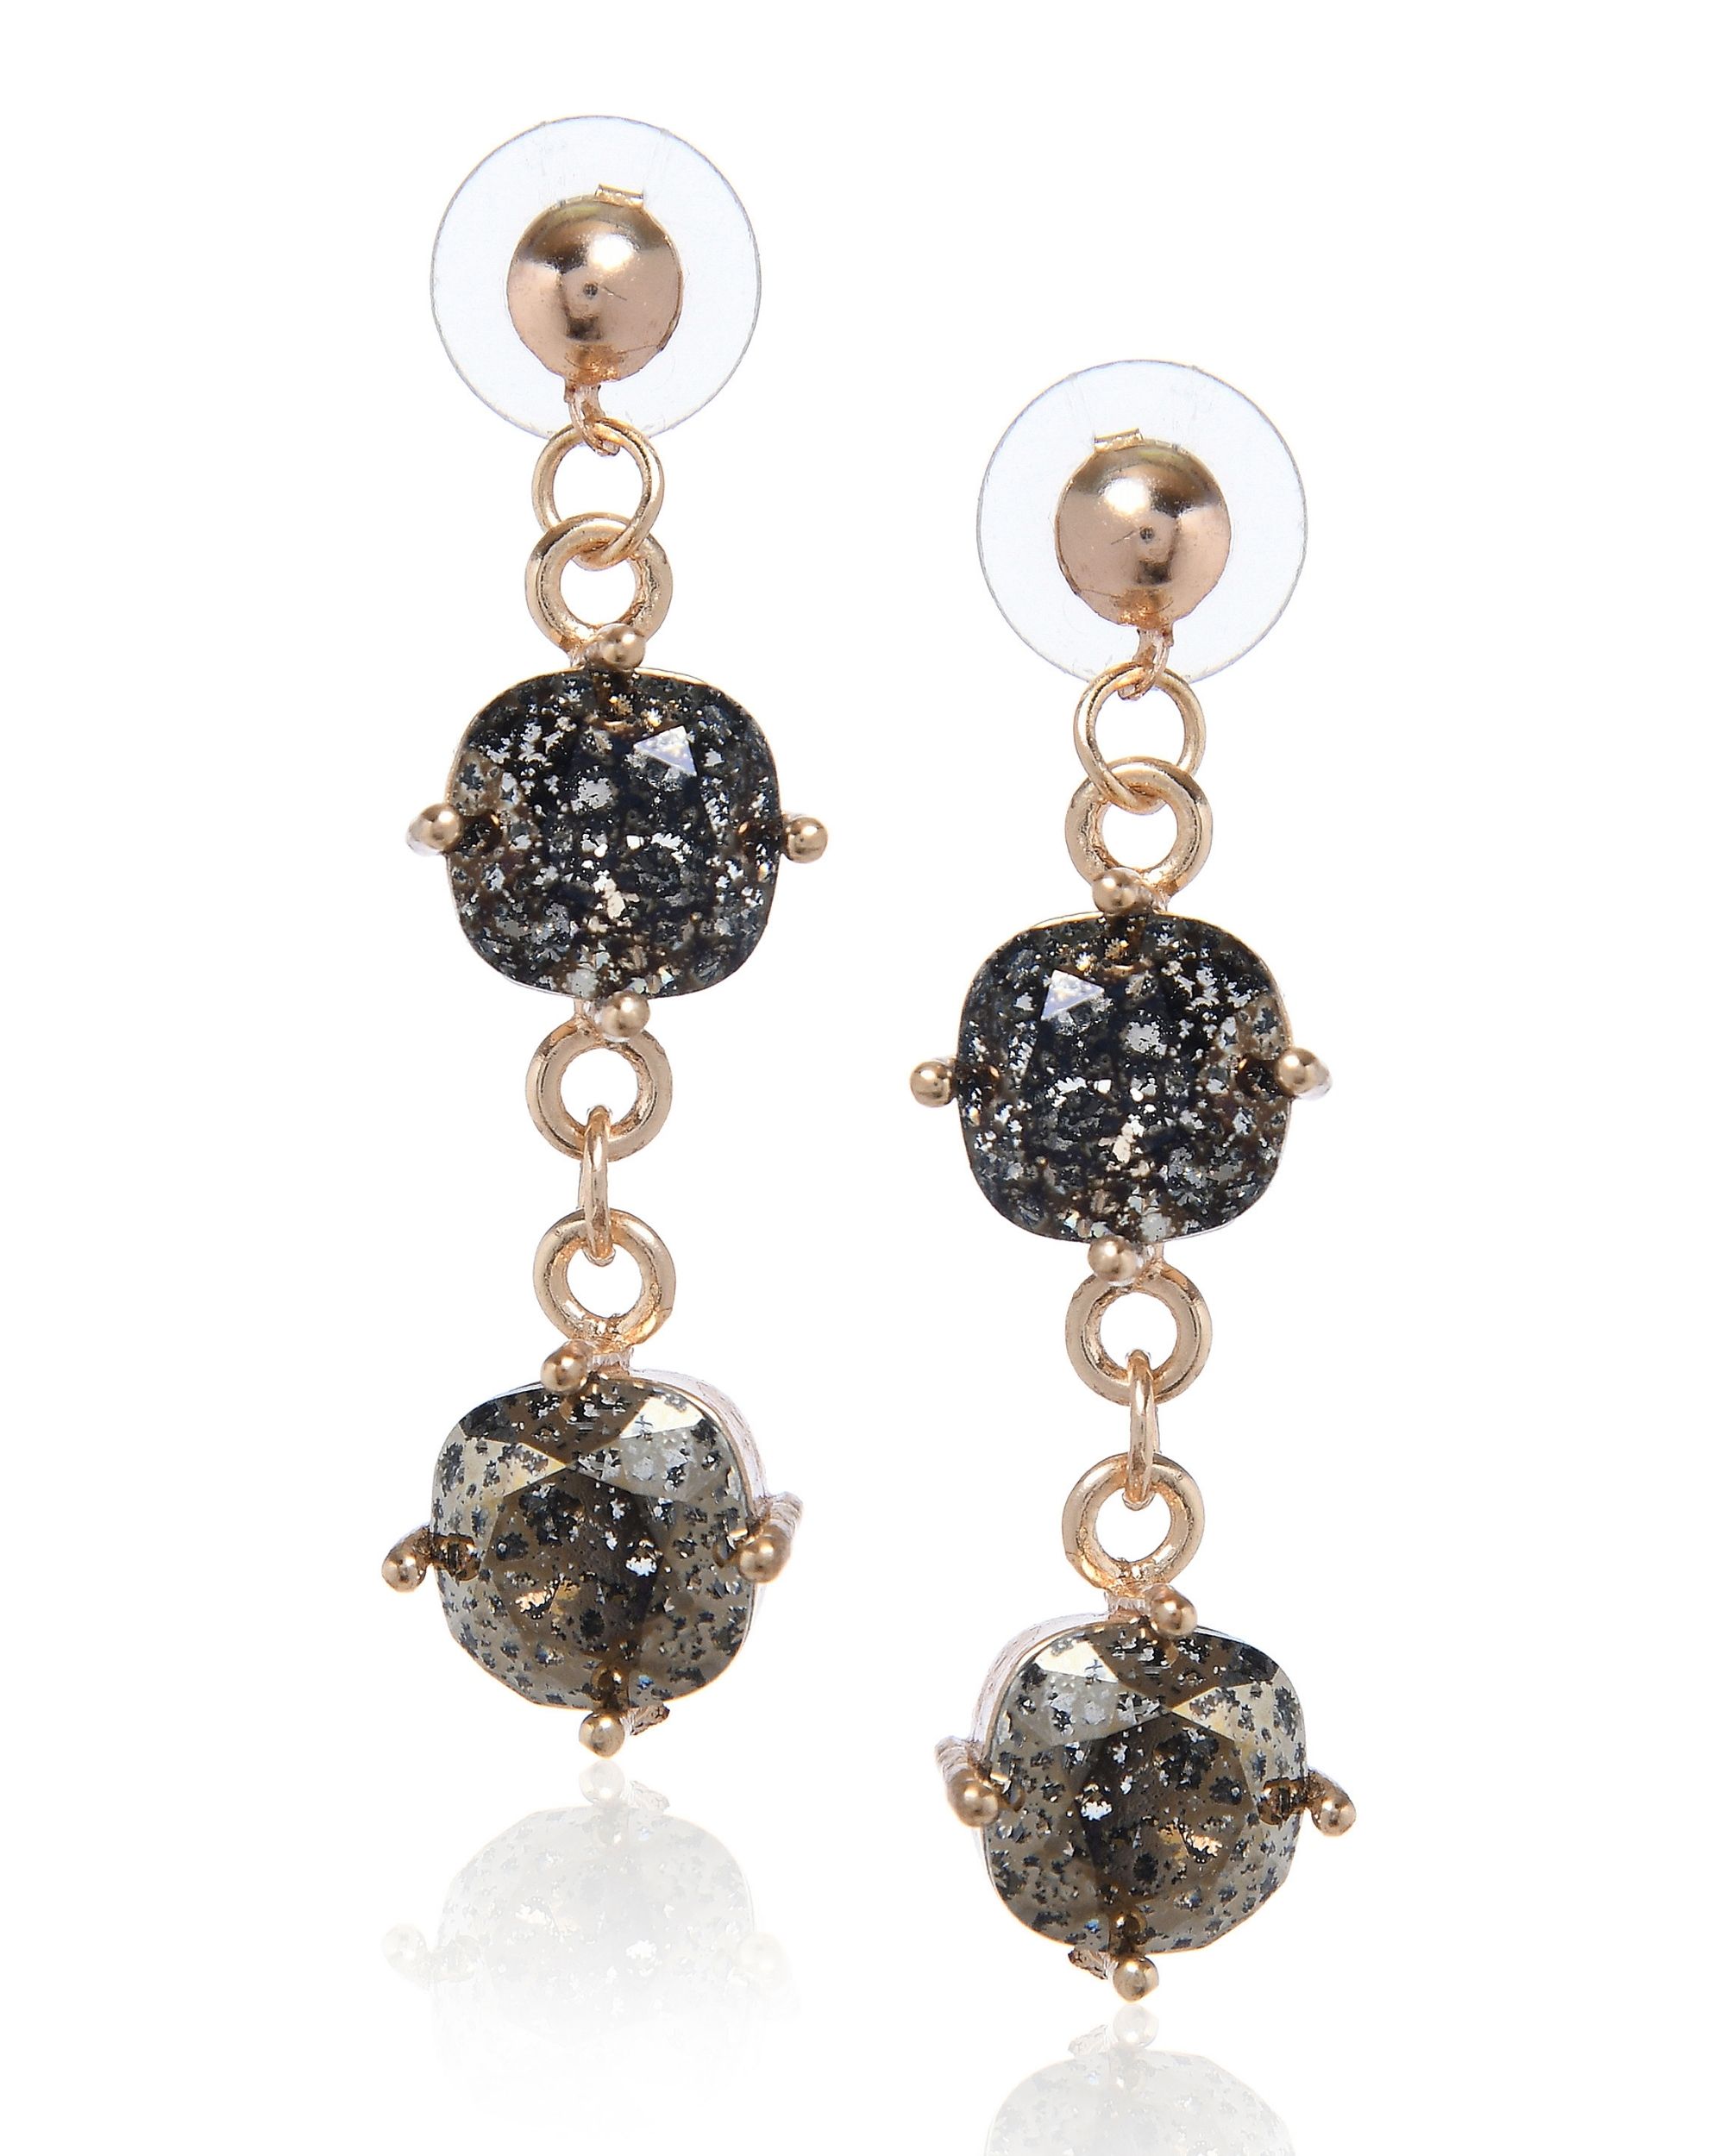 Crystal black patina earrings